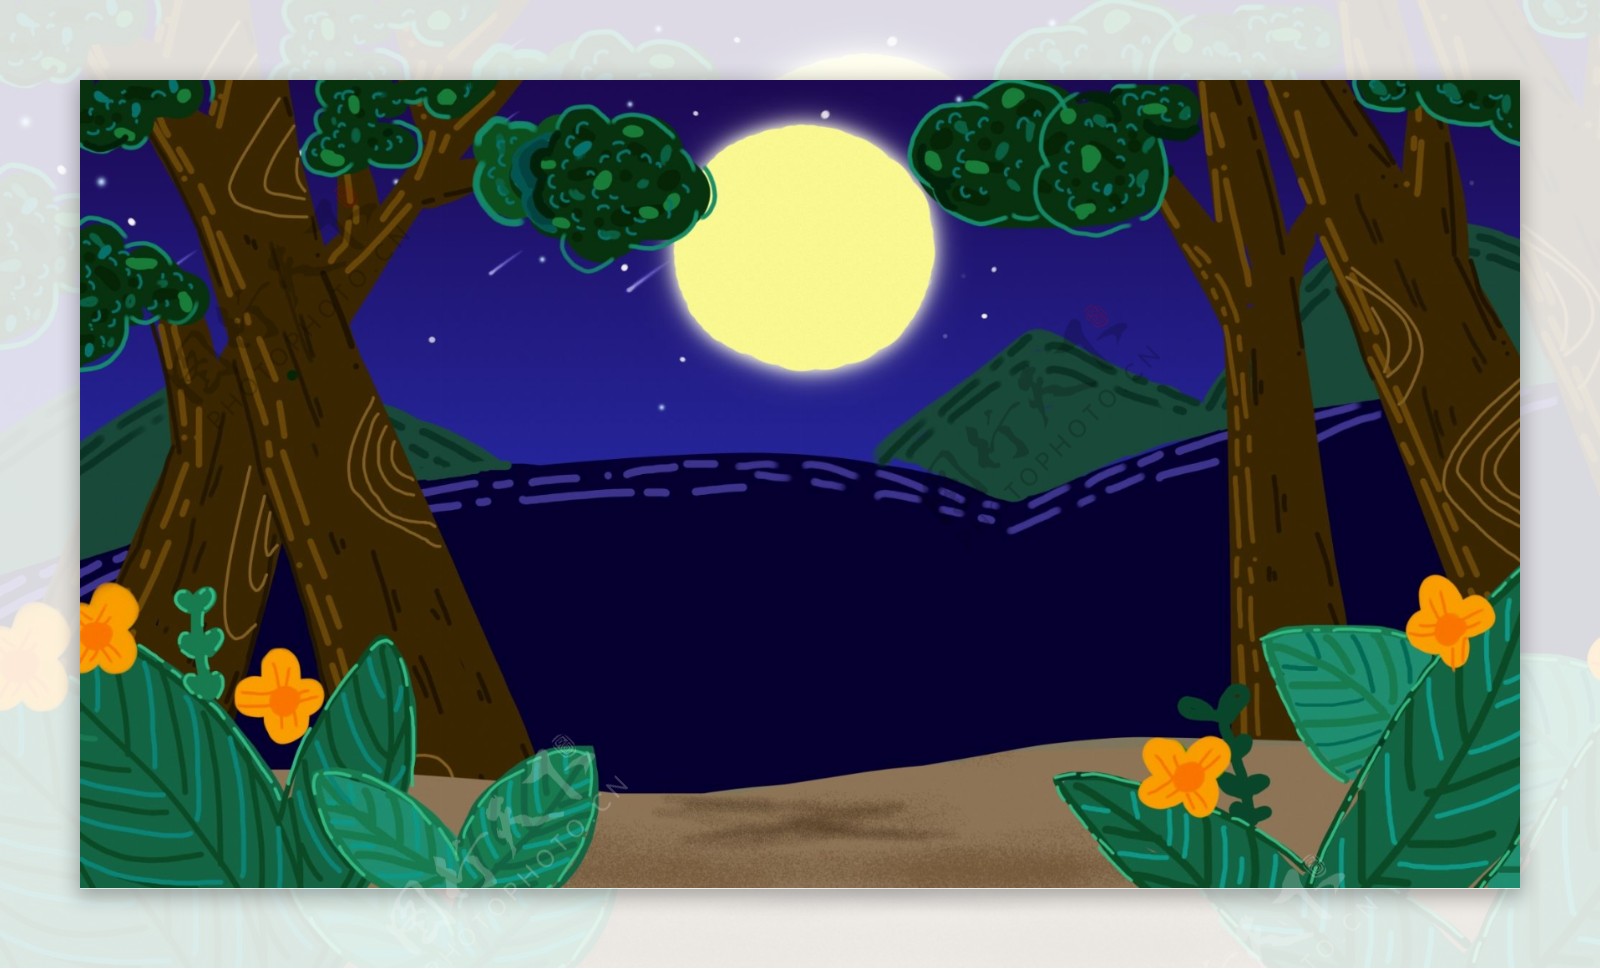 山林间的一轮明月卡通背景